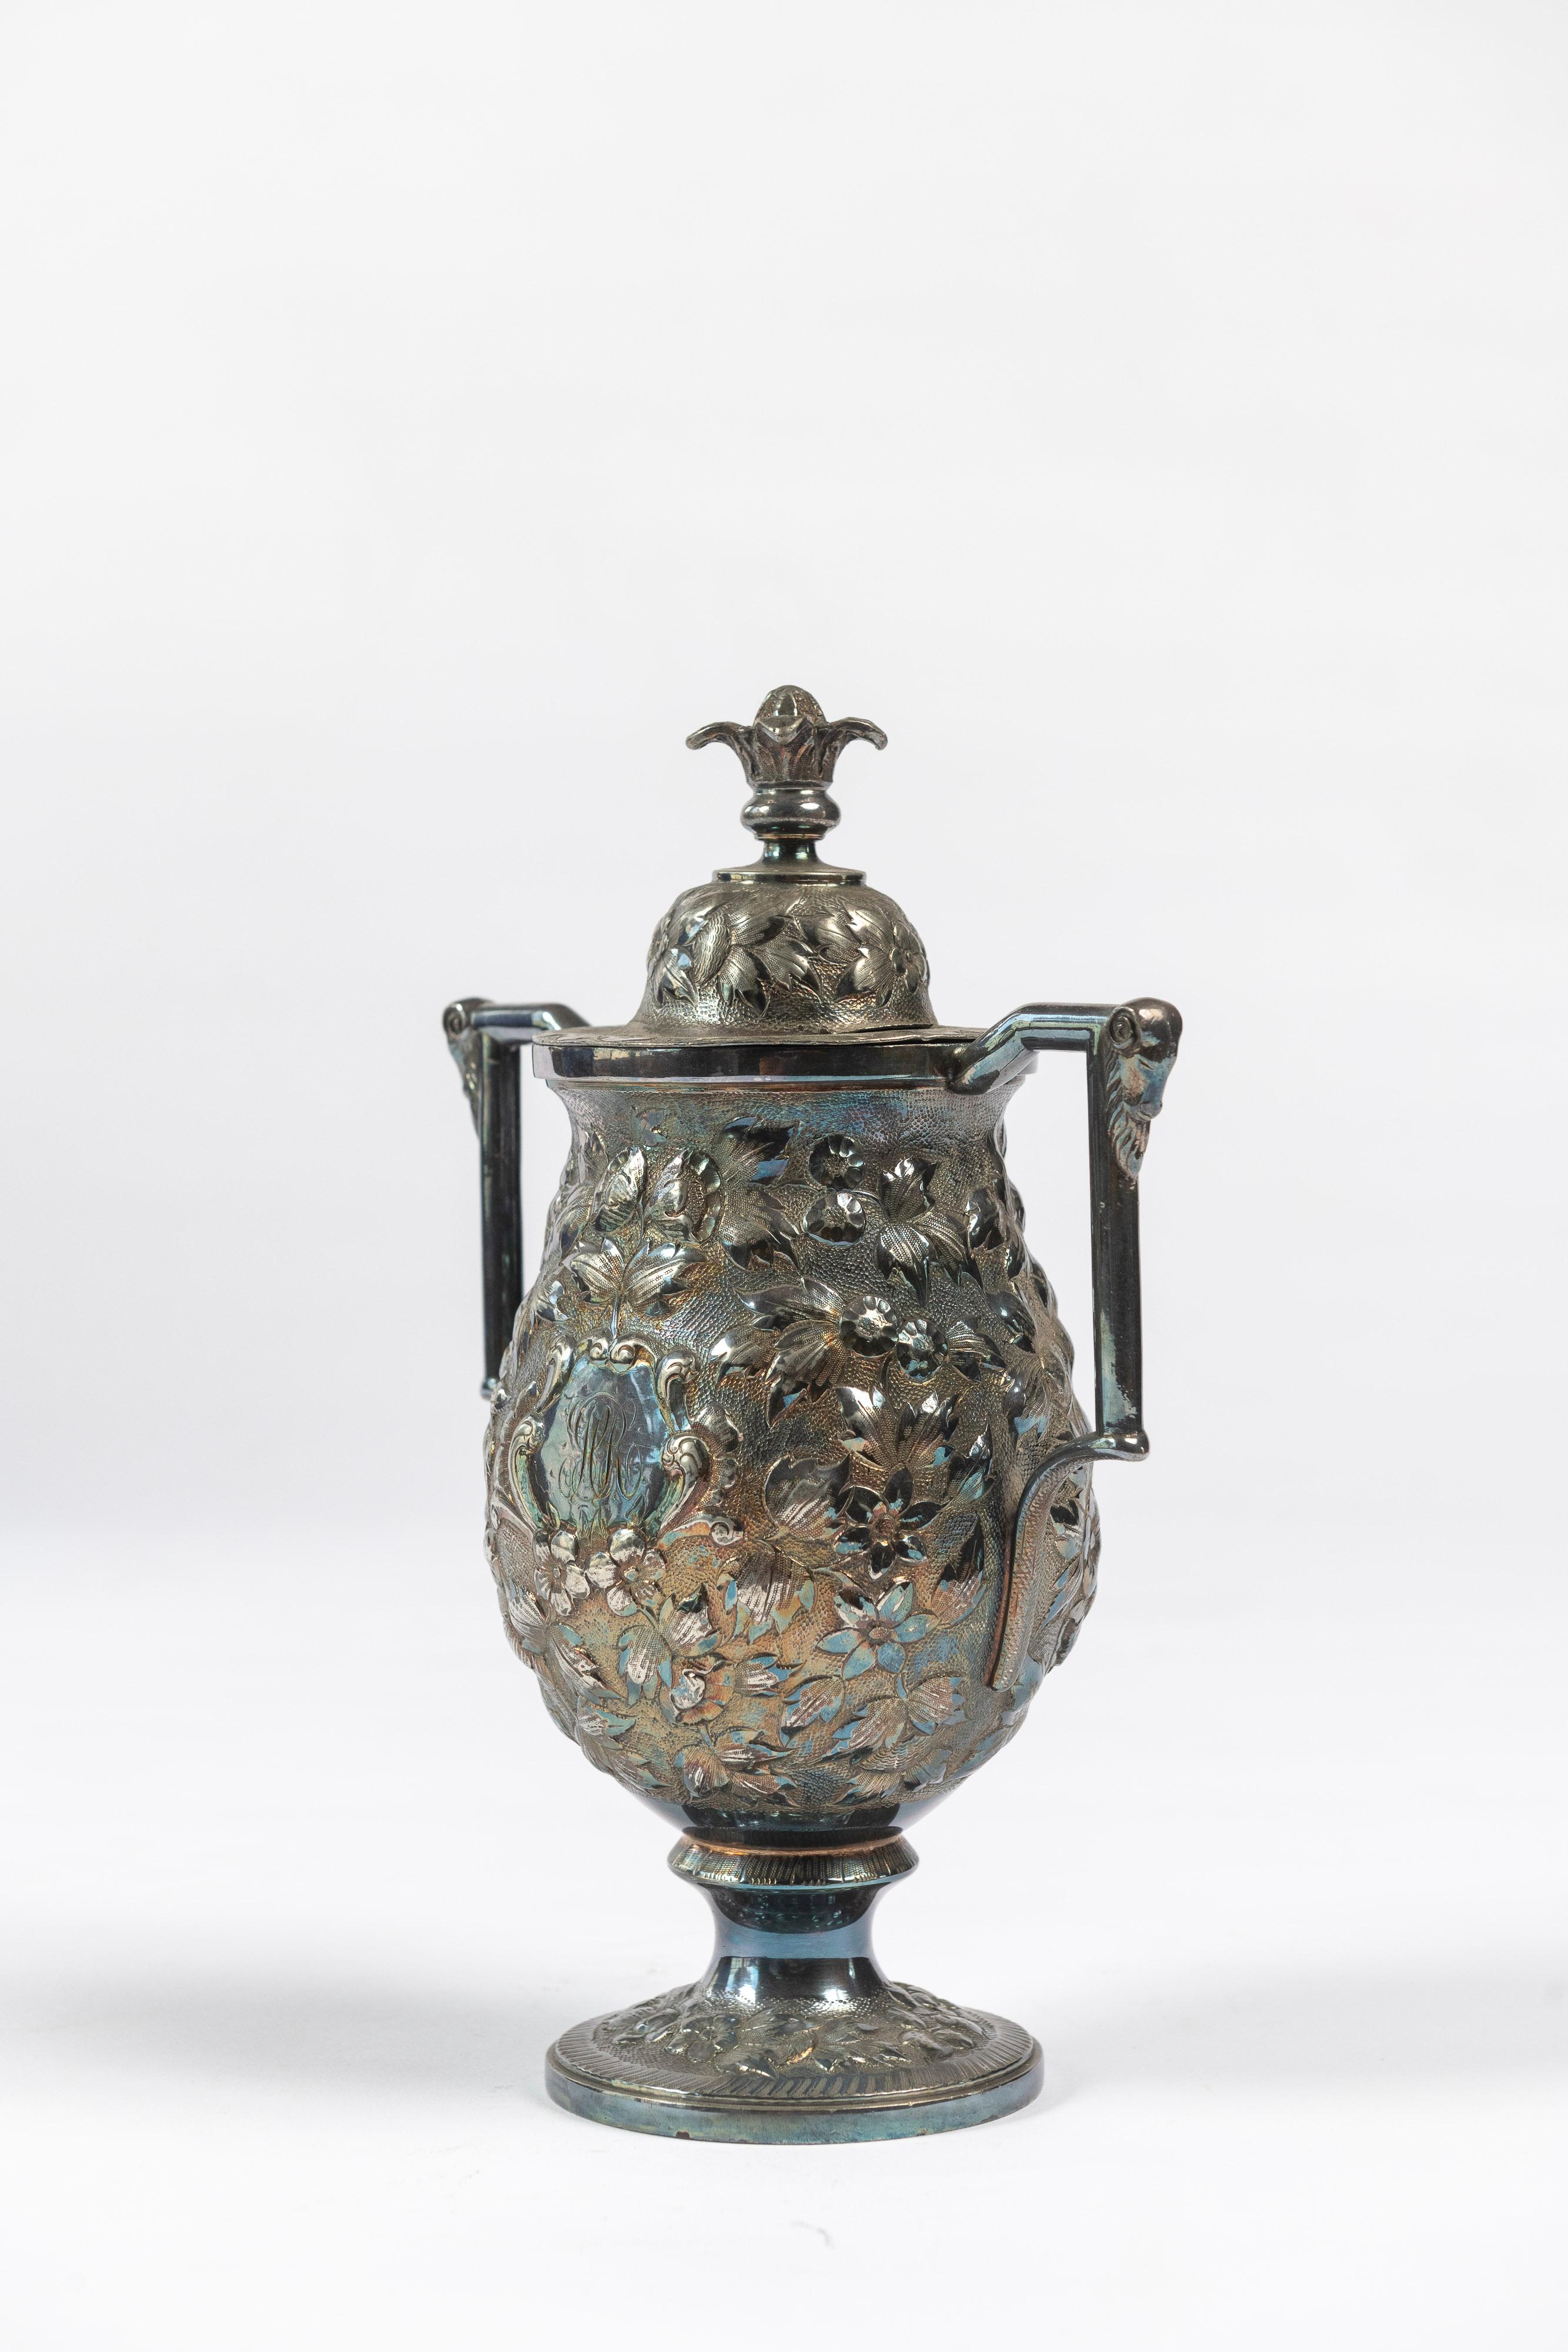 Ancienne urne à thé en métal argenté, avec bras et couvercle ornés, datant de la fin des années 1800, fabriquée à Baltimore, MD, par Chas. Hamill & Co. Un joli récipient pour ranger toutes sortes de choses, bien qu'il ait été conçu à l'origine pour